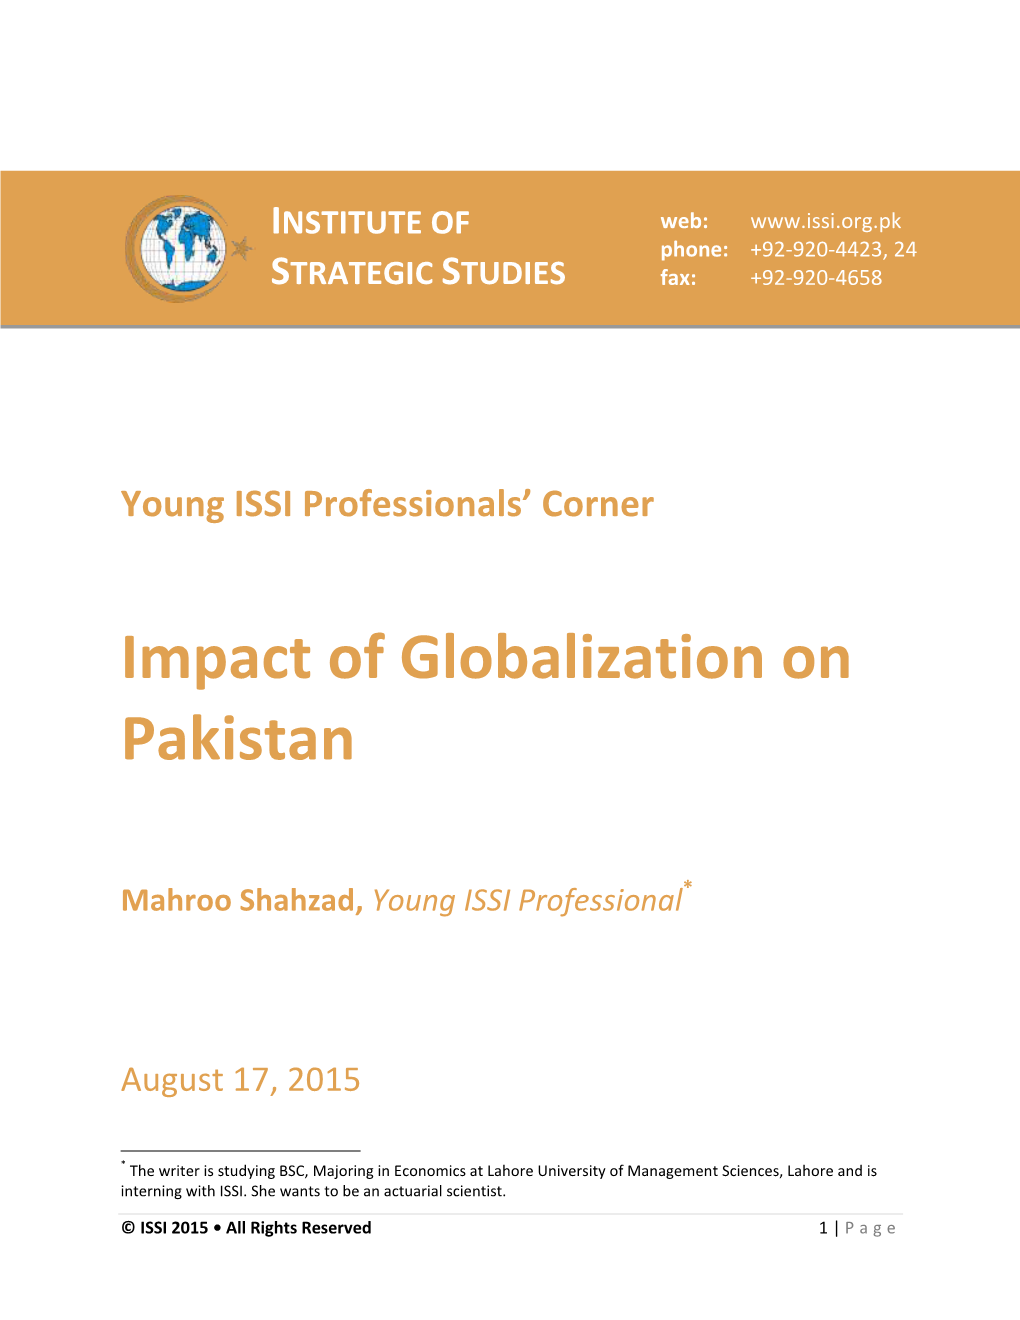 Impact of Globalization on Pakistan